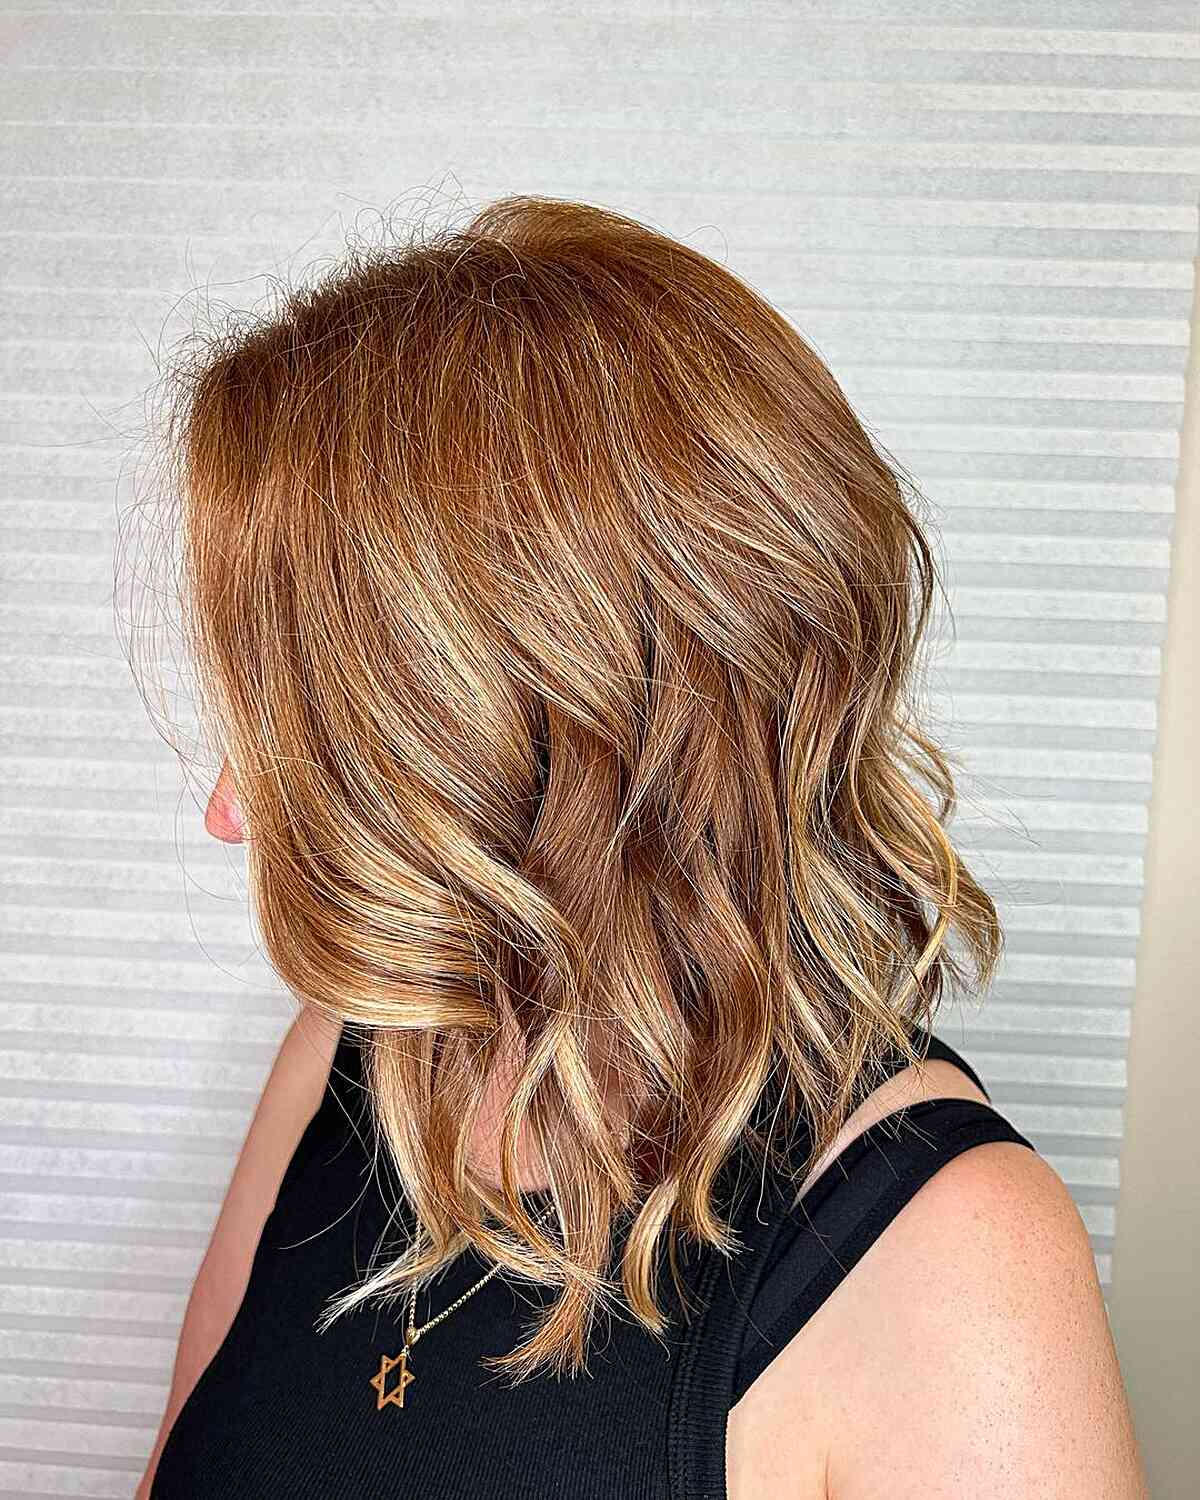 Shoulder-Length Ginger Hair With Blonde Highlights